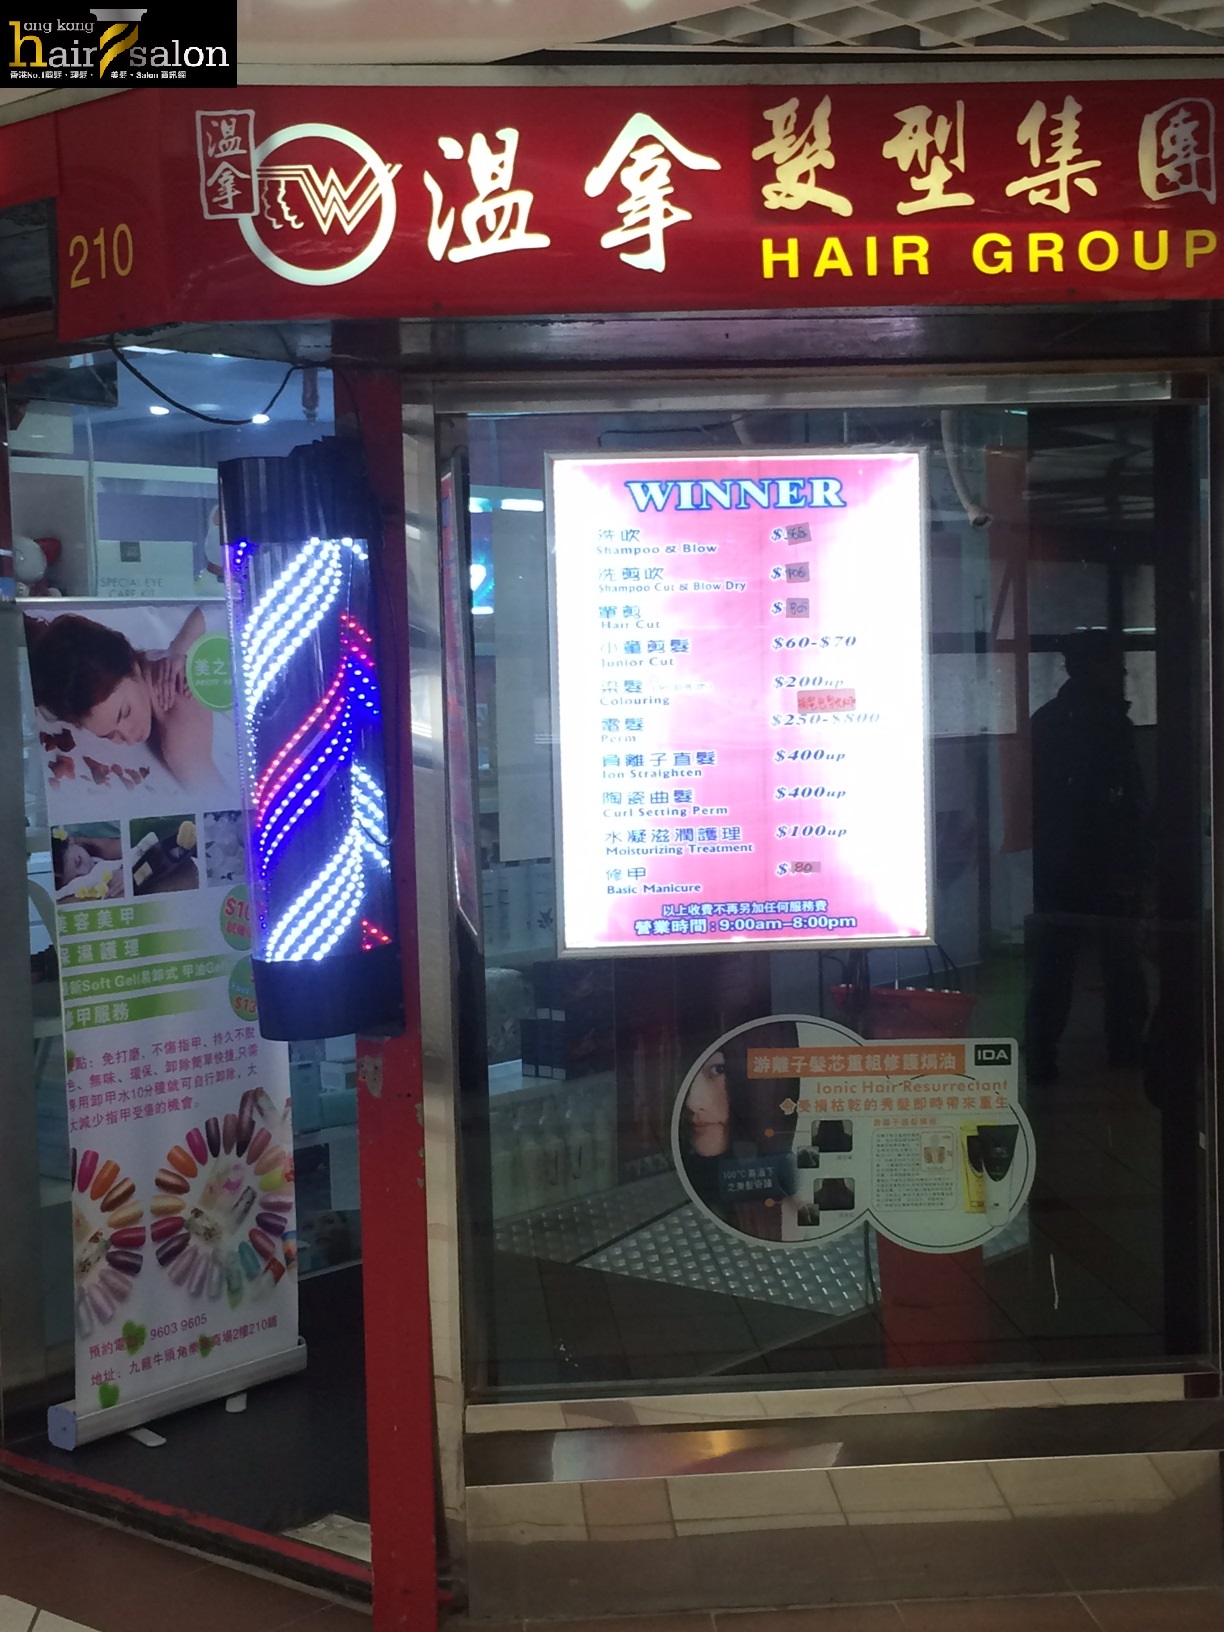 髮型屋: 溫拿髮型集團 Hair Group